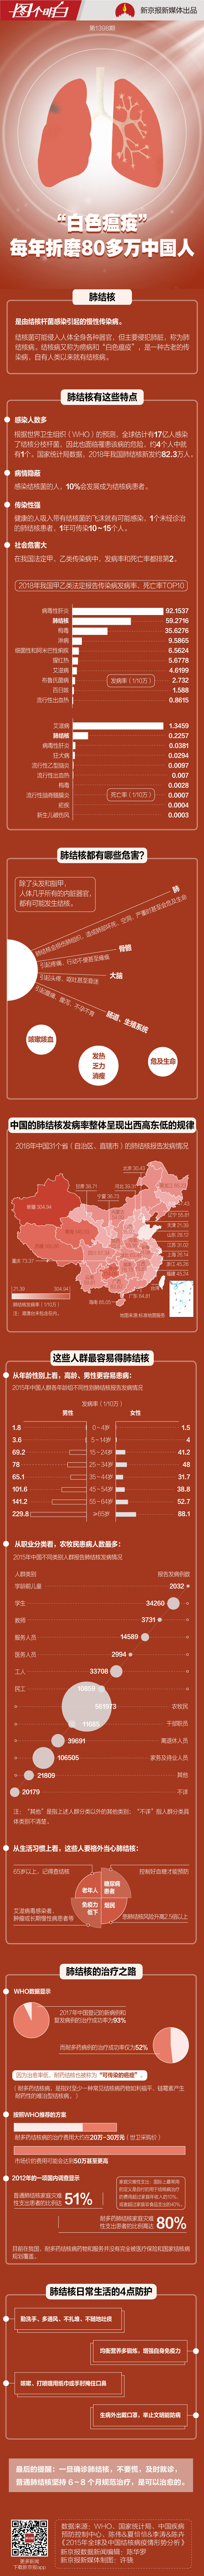 在中国 每年有80多万人受这种病折磨